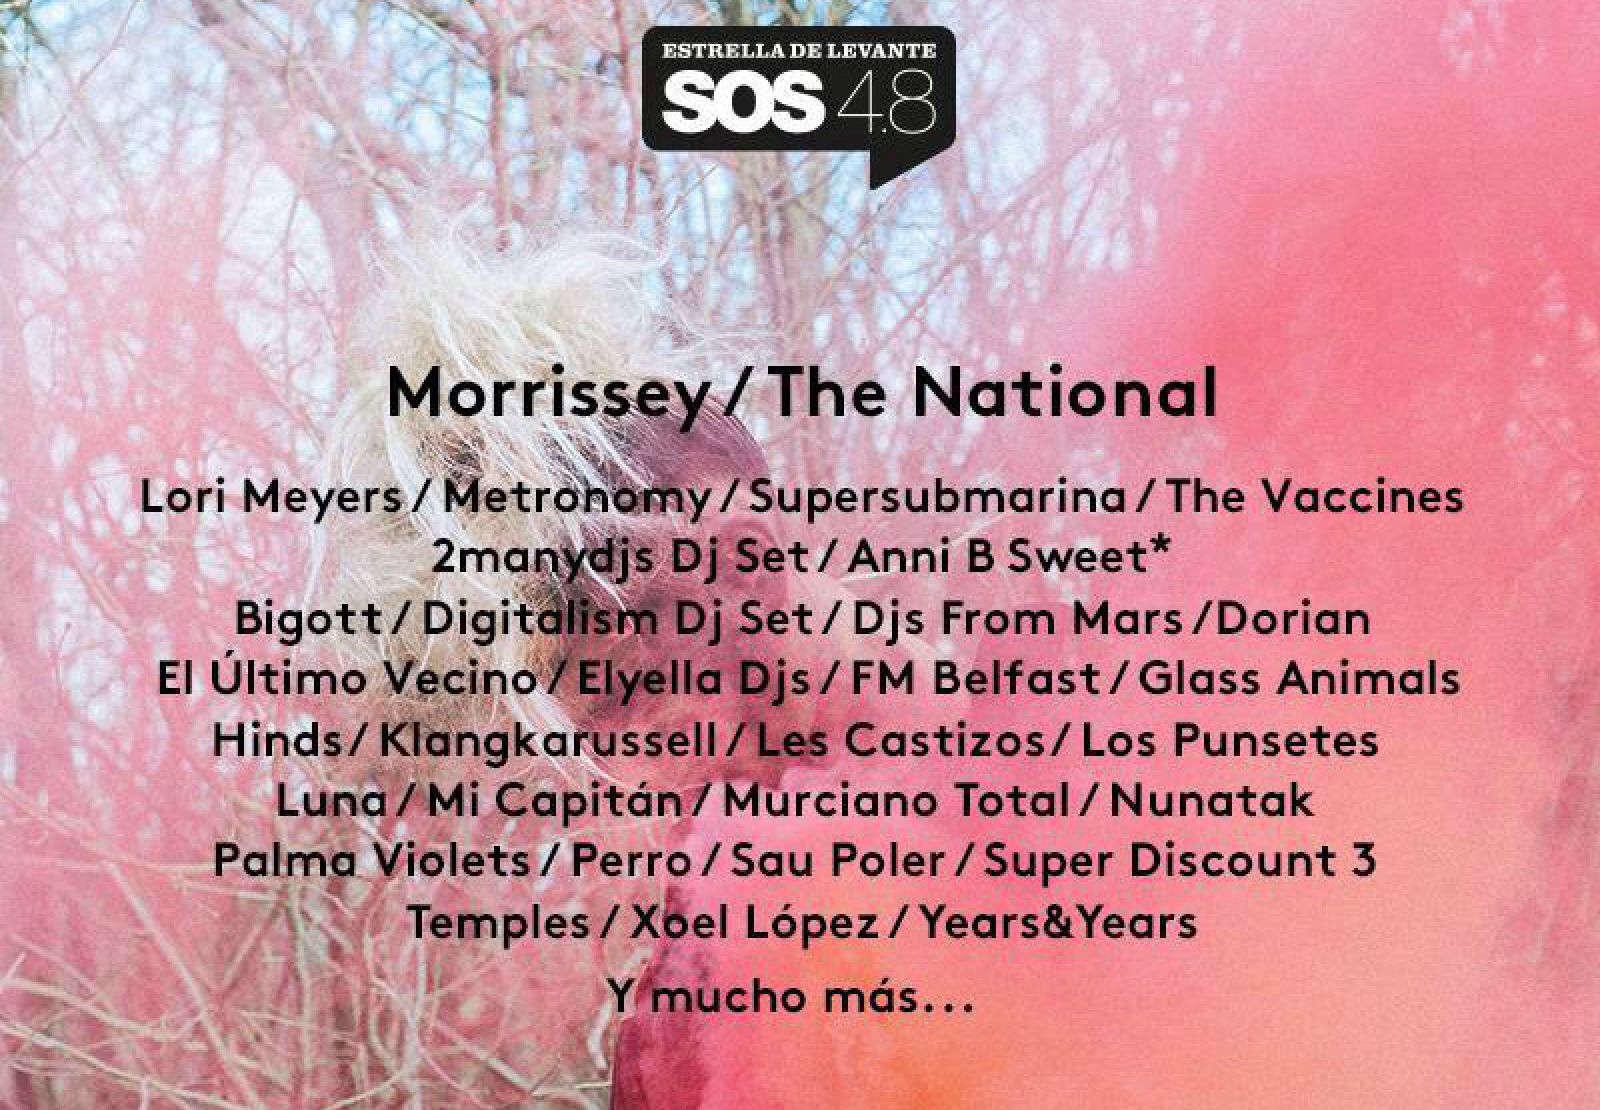 Radio 3 te ofrece los mejores conciertos del SOS 4.8